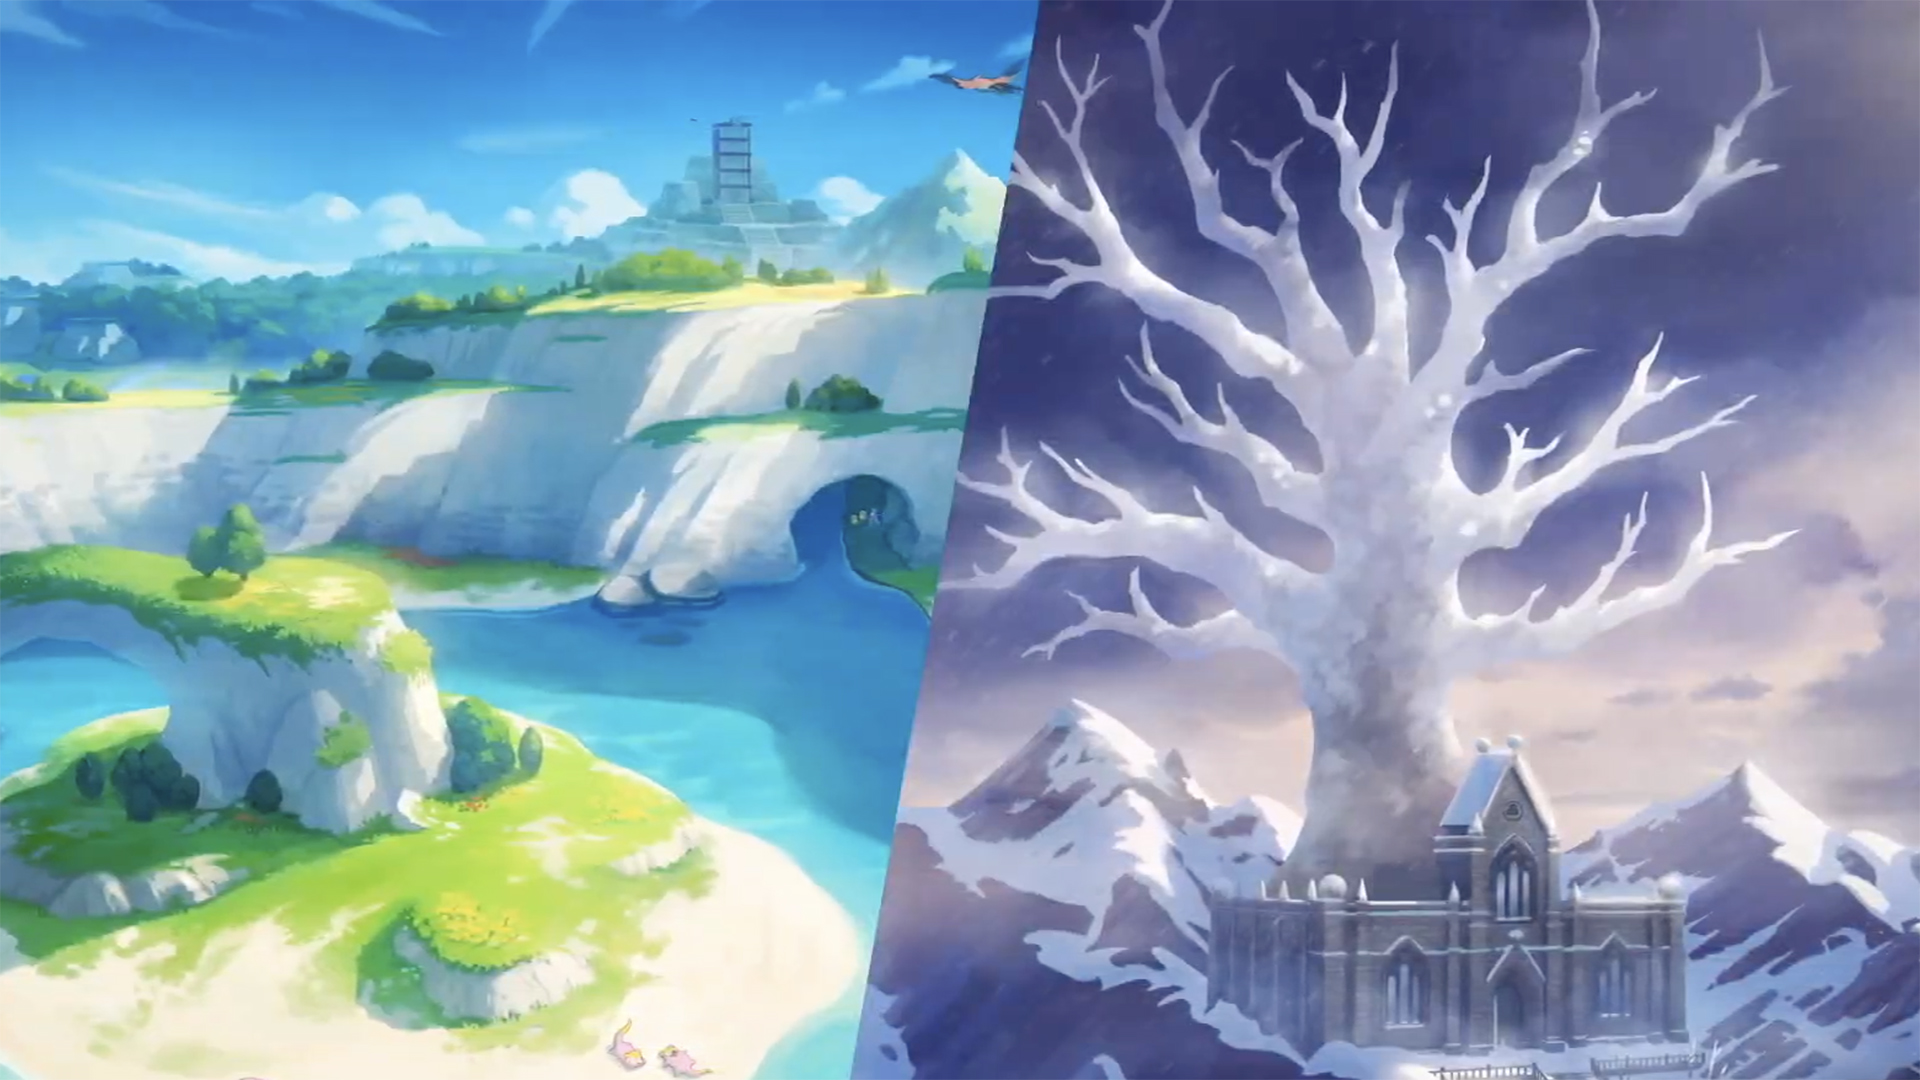 Pokémon Sword And Shield Expansion Pass: Isle Of Armor New Pokémon